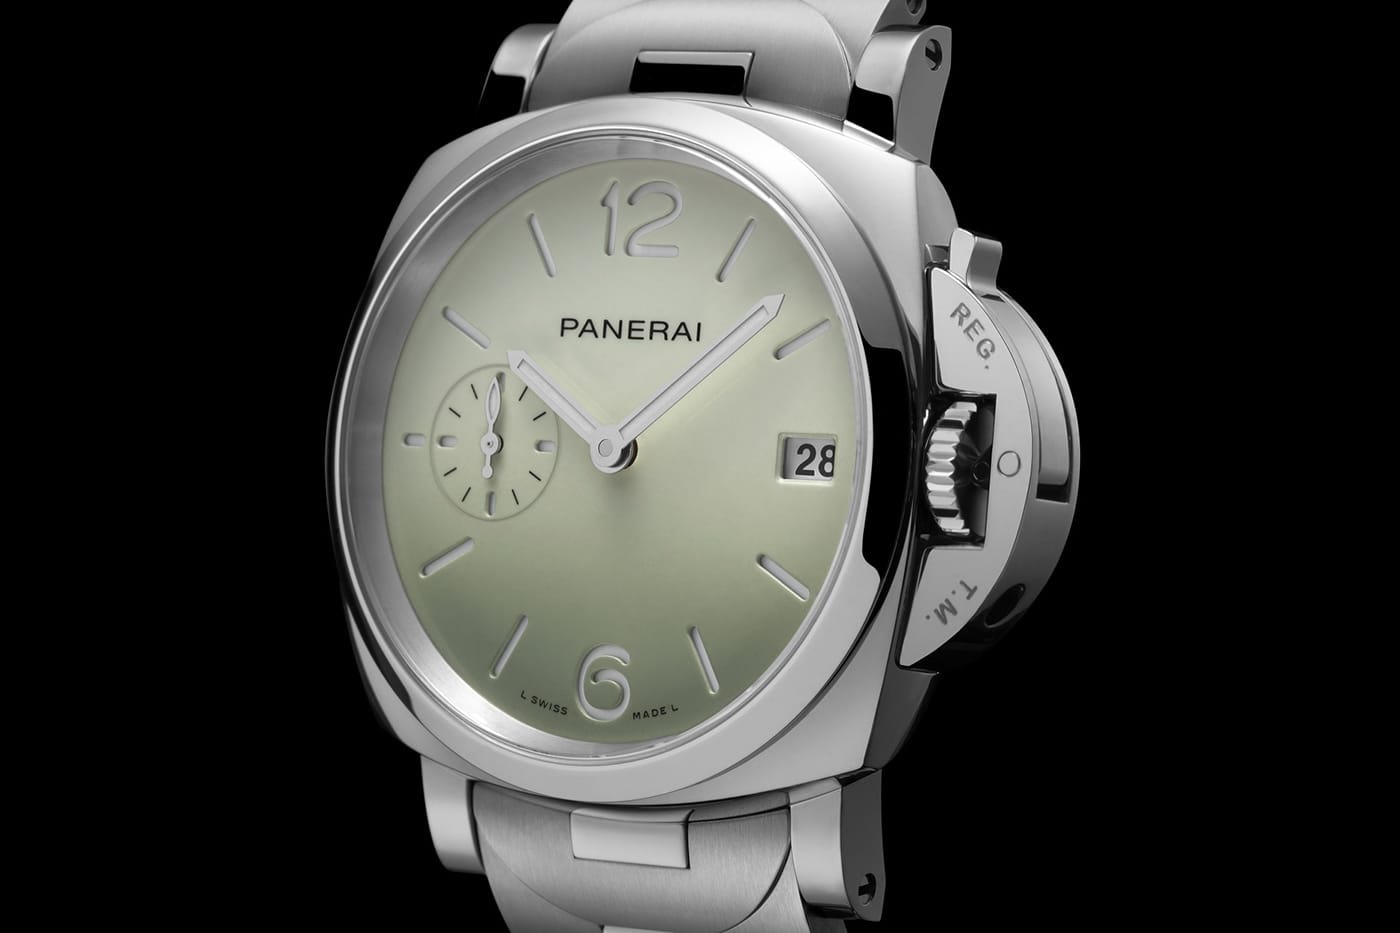 파네라이가 새로운 ‘루미노르 두에’ 컬렉션을 공개했다, 다이버 워치, 시계 추천, 럭셔리 시계, 파스텔 시계, 컬러 다이얼, 파스텔 다이얼